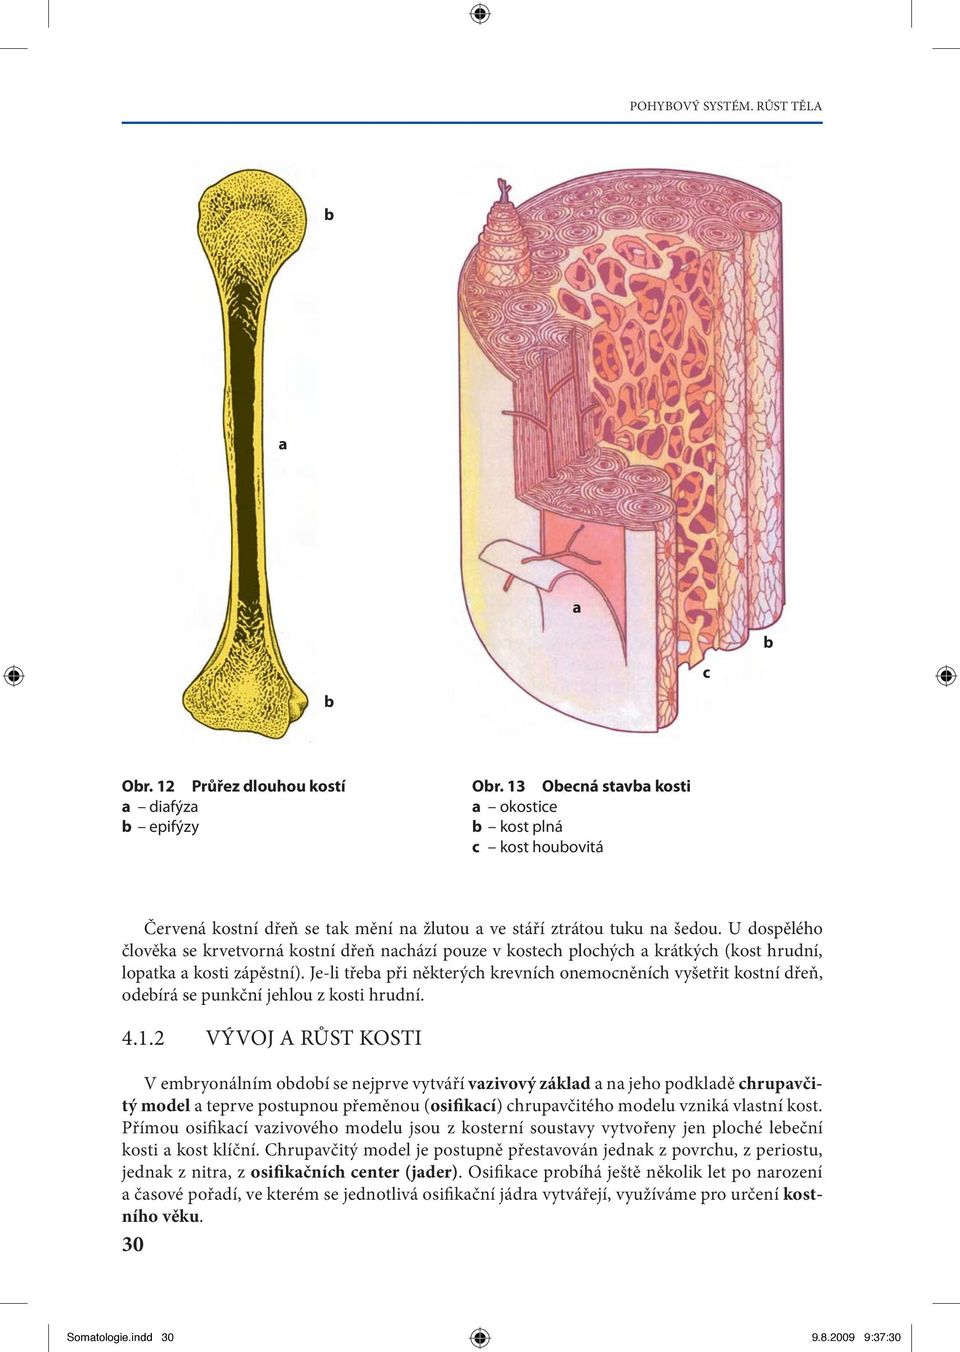 Je-li tře při některýh krevníh onemoněníh vyšetřit kostní řeň, oeírá se punkční jehlou z kosti hruní. 4.1.